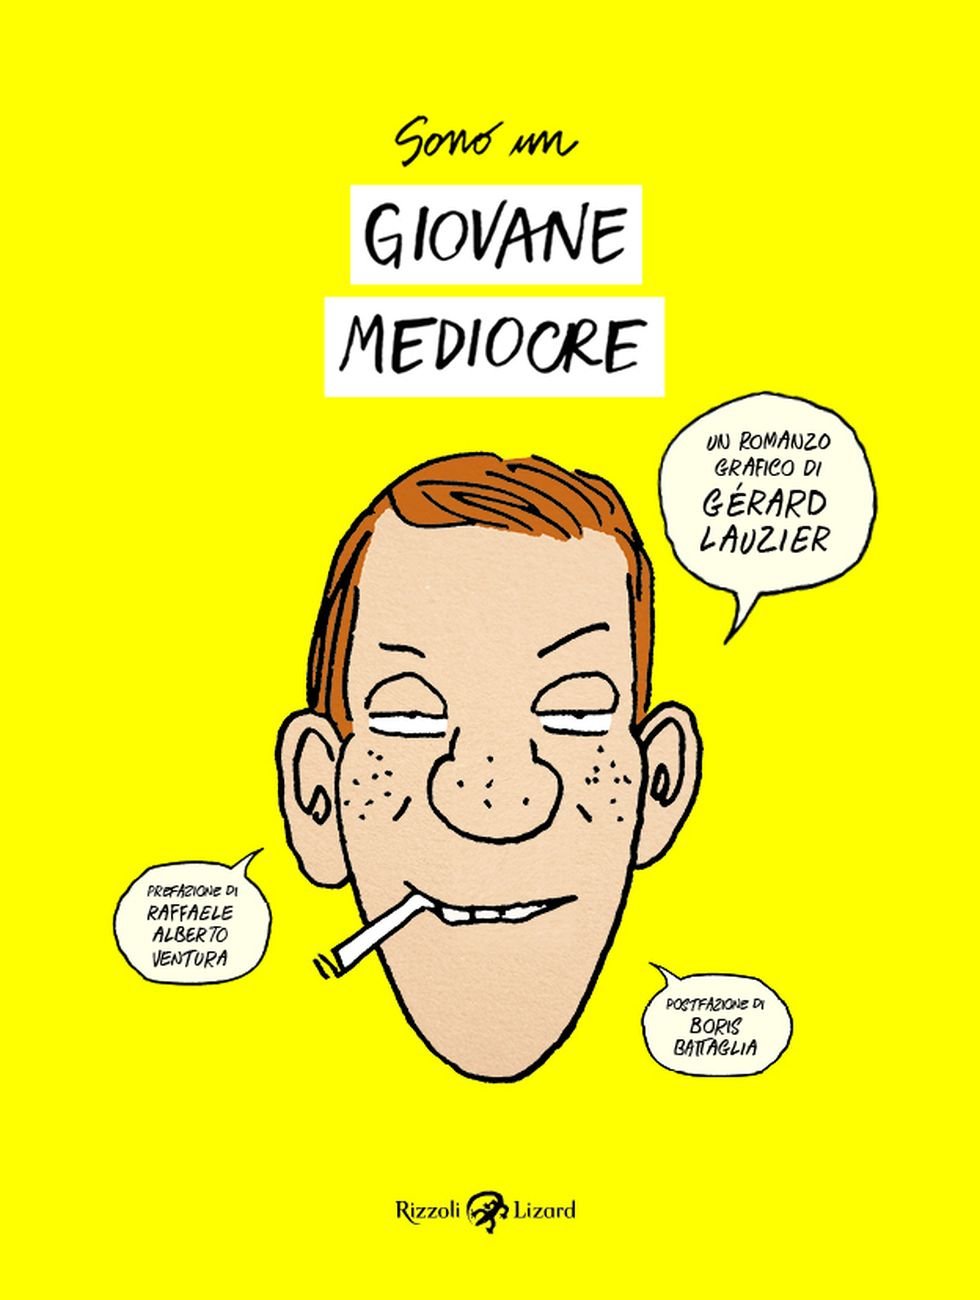 Gérard Lauzier ‒ Sono un giovane mediocre (Rizzoli Lizard, Milano 2018). Copertina